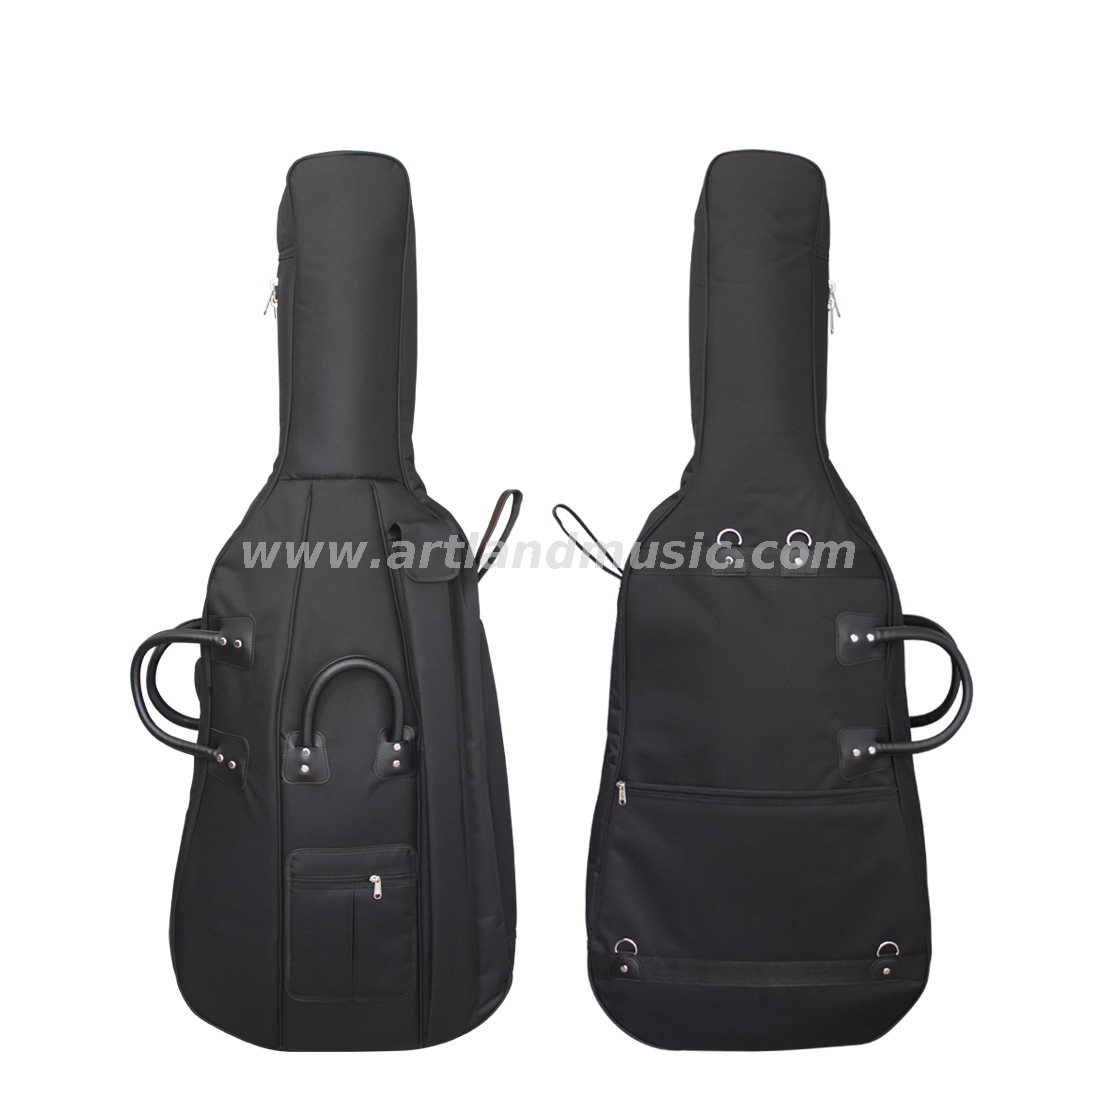 Bolsa de violonchelo de 20 mm de alta calidad de color negro Nuevo (BGC120) 